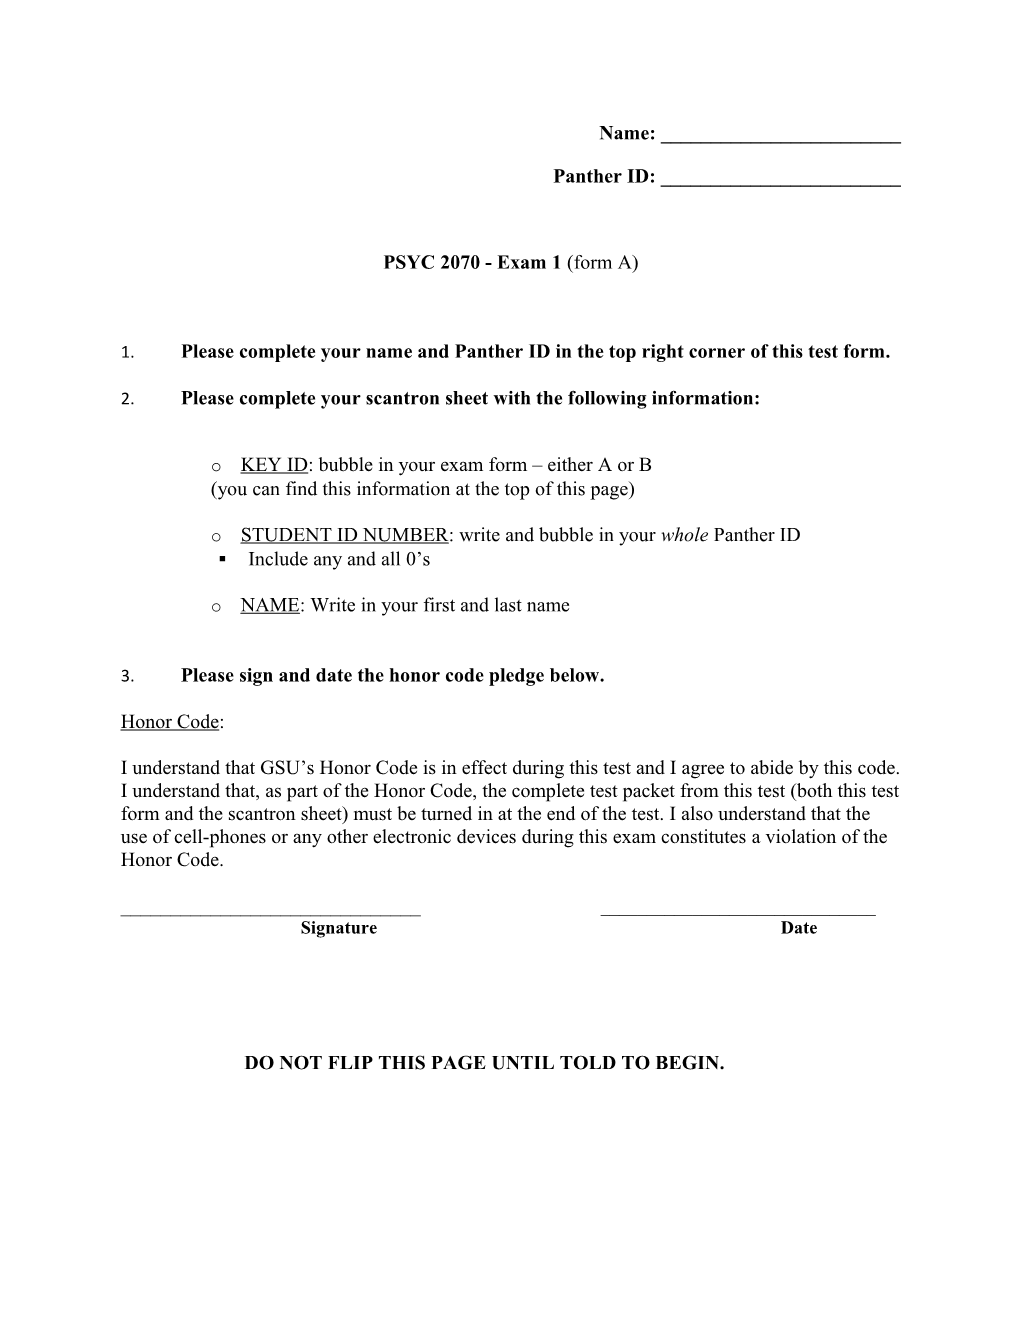 PSYC 2070 - Exam 1 (Form A)